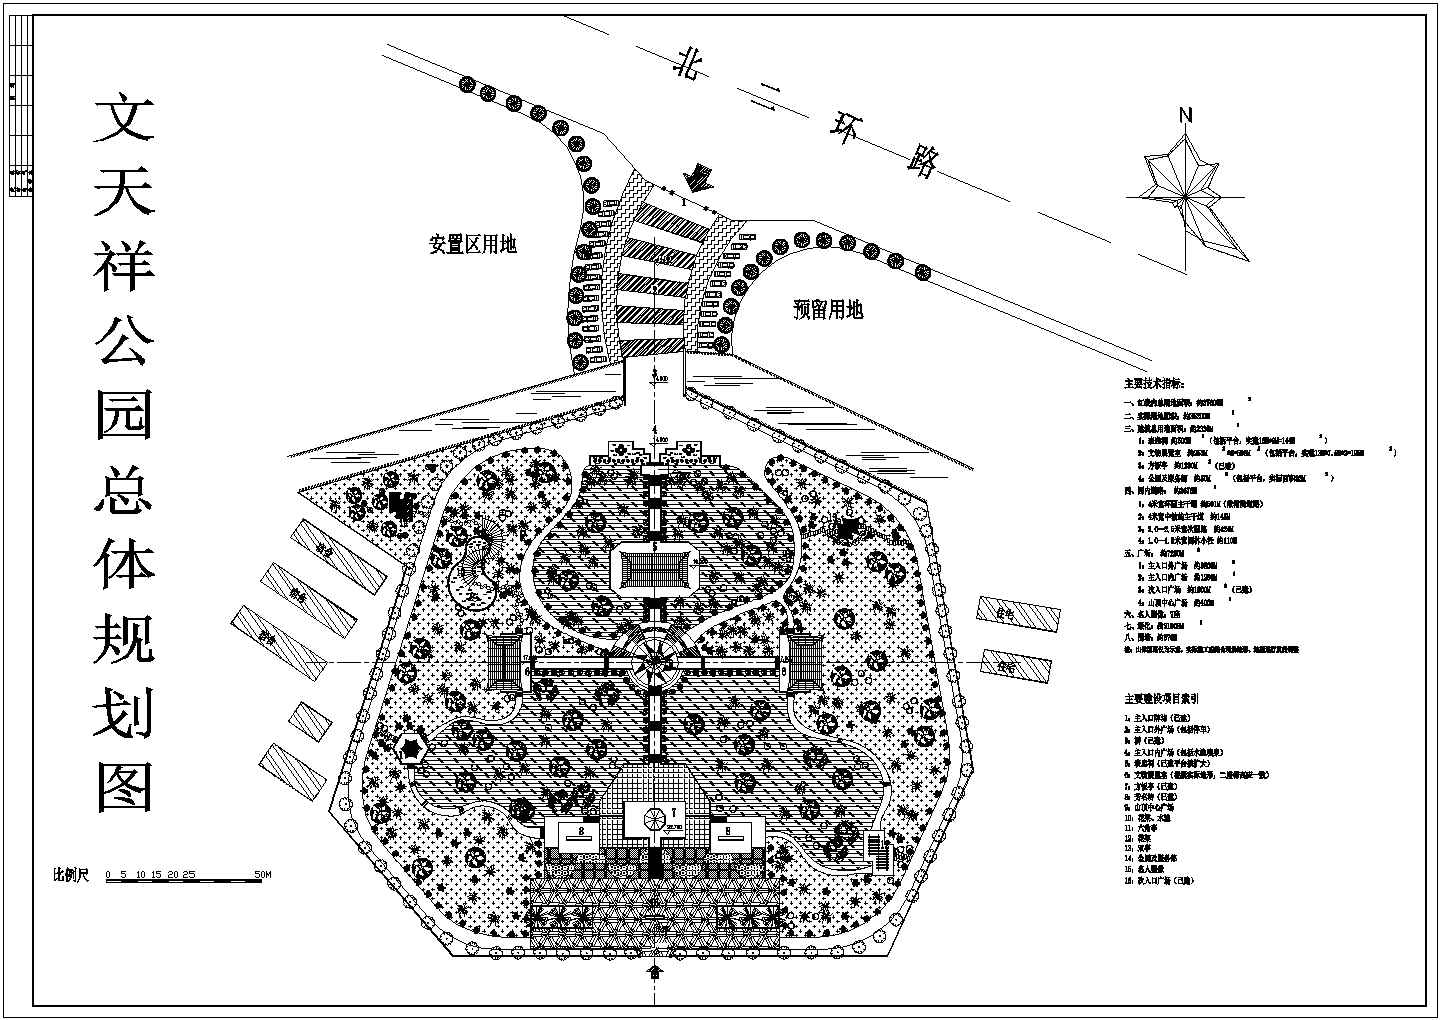 某著名景点公园CAD大样详细完整总体规划图